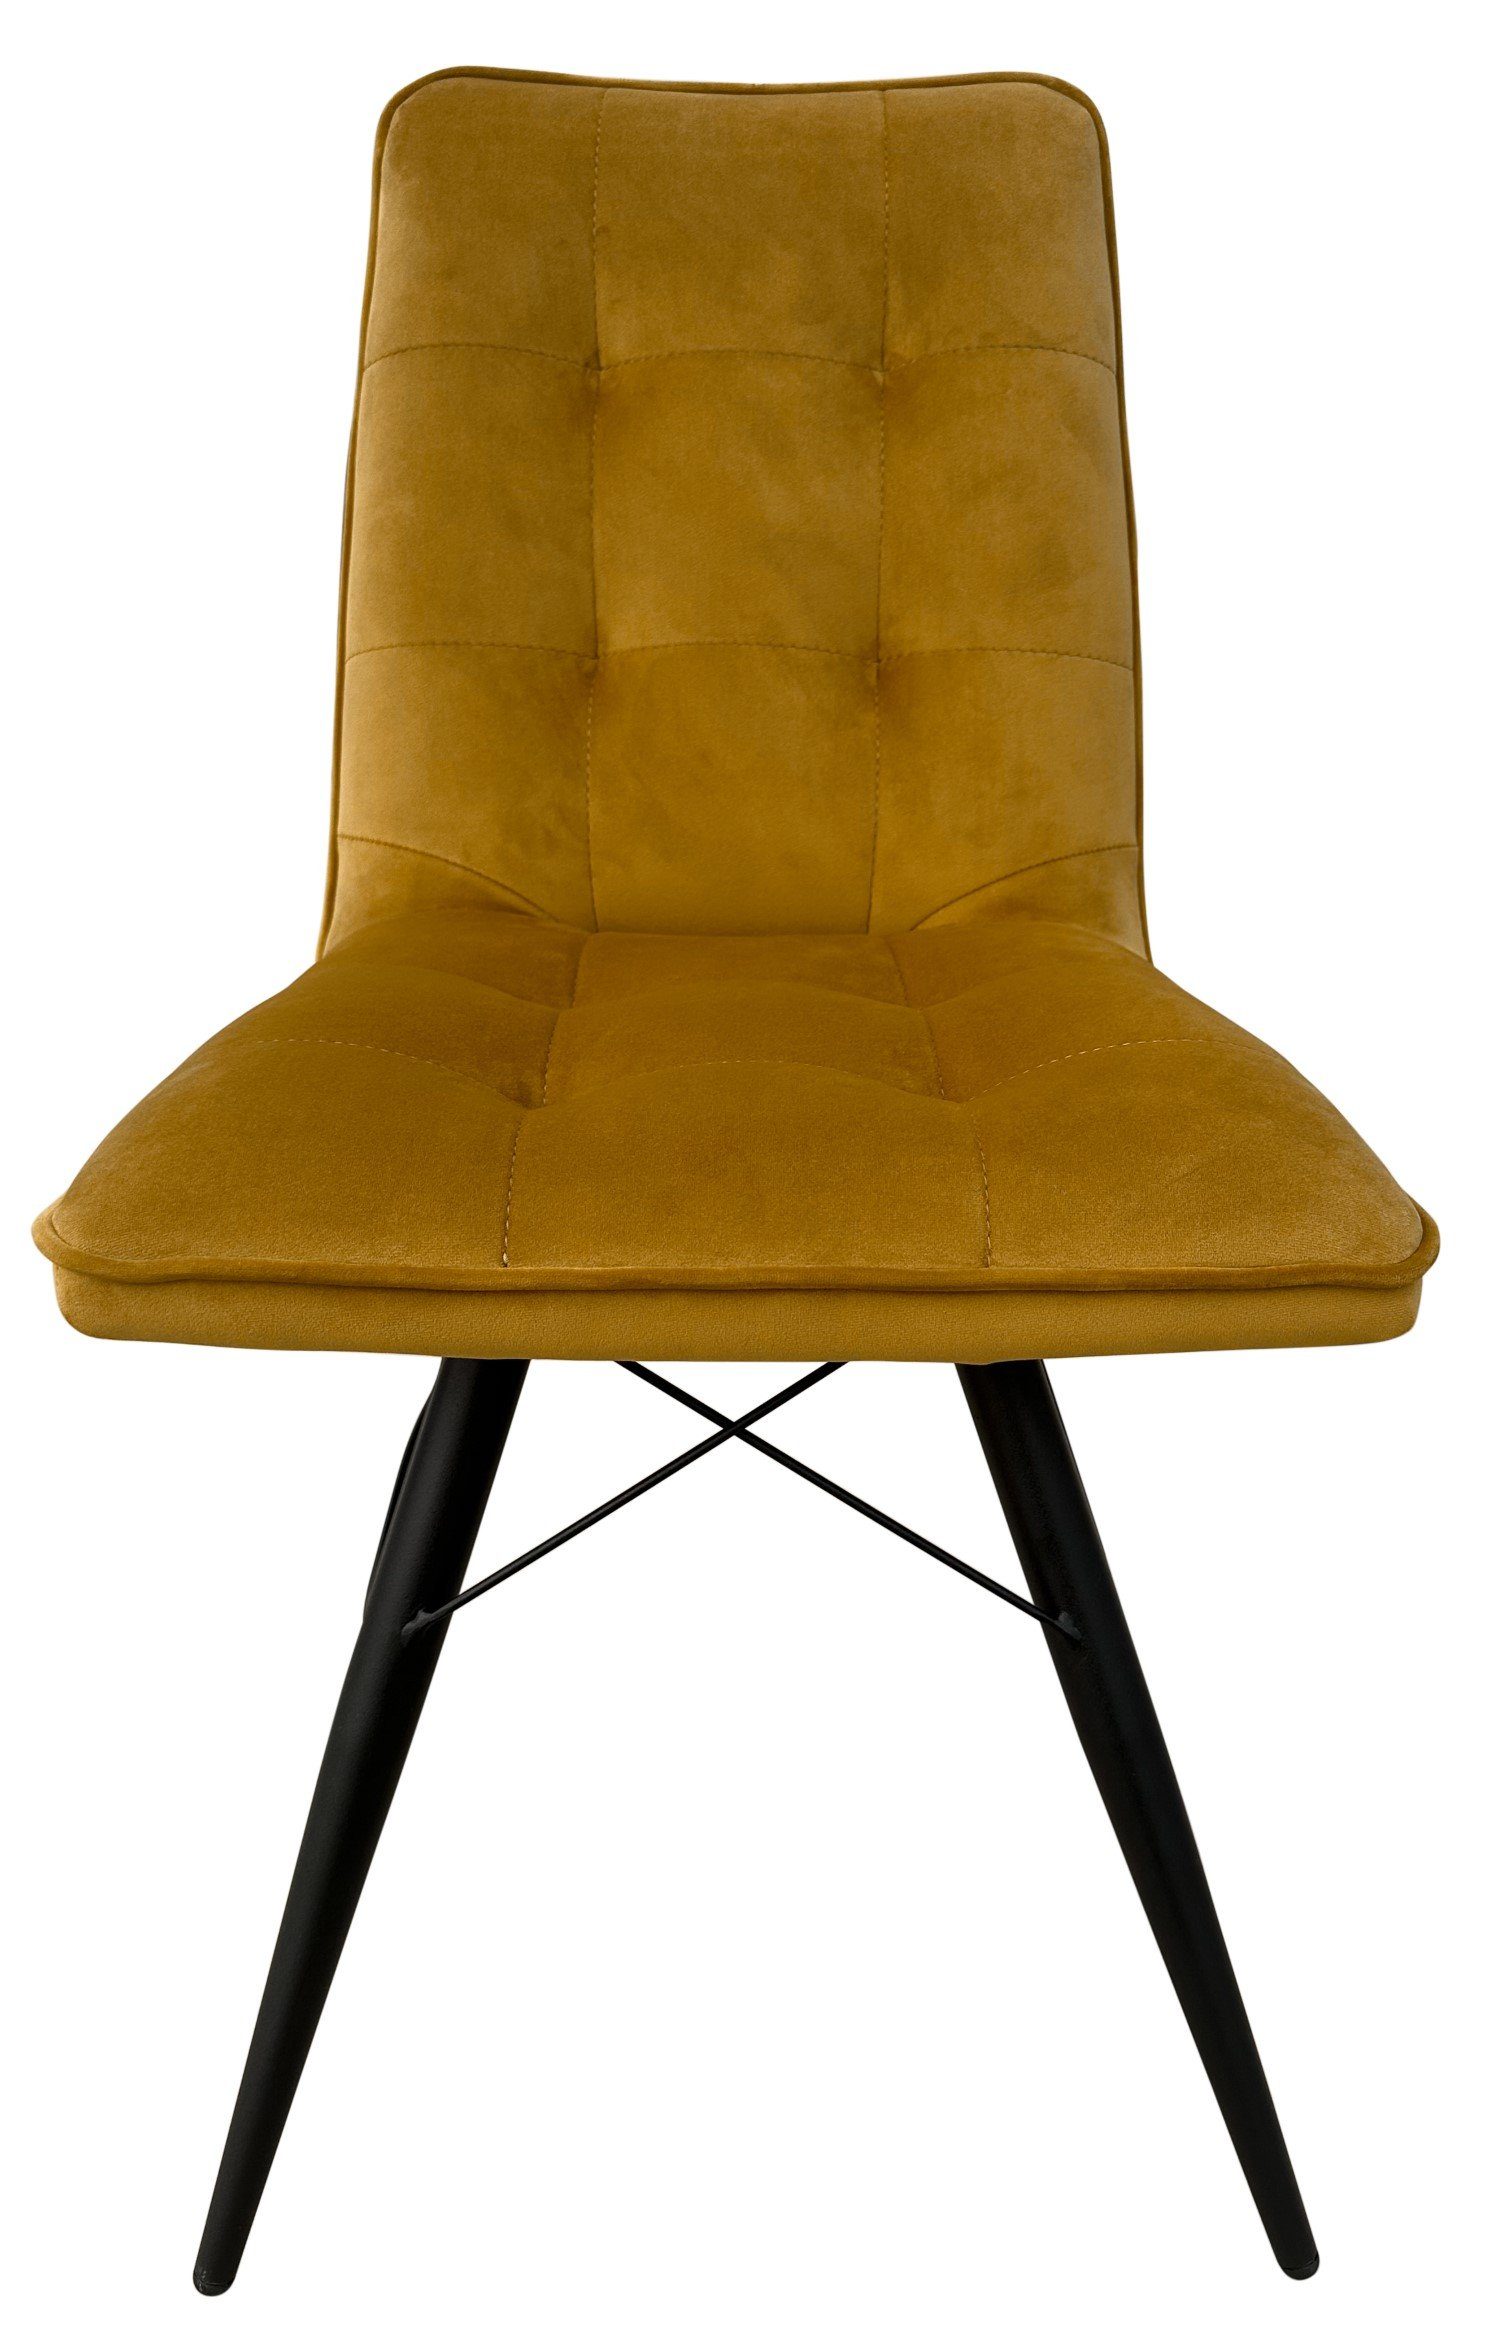 living - Samtbezug - - hohe Stuhl weicher Samt bene Vicenza saharagelb, - gepolstert - Metall-Gestell Rückenlehne